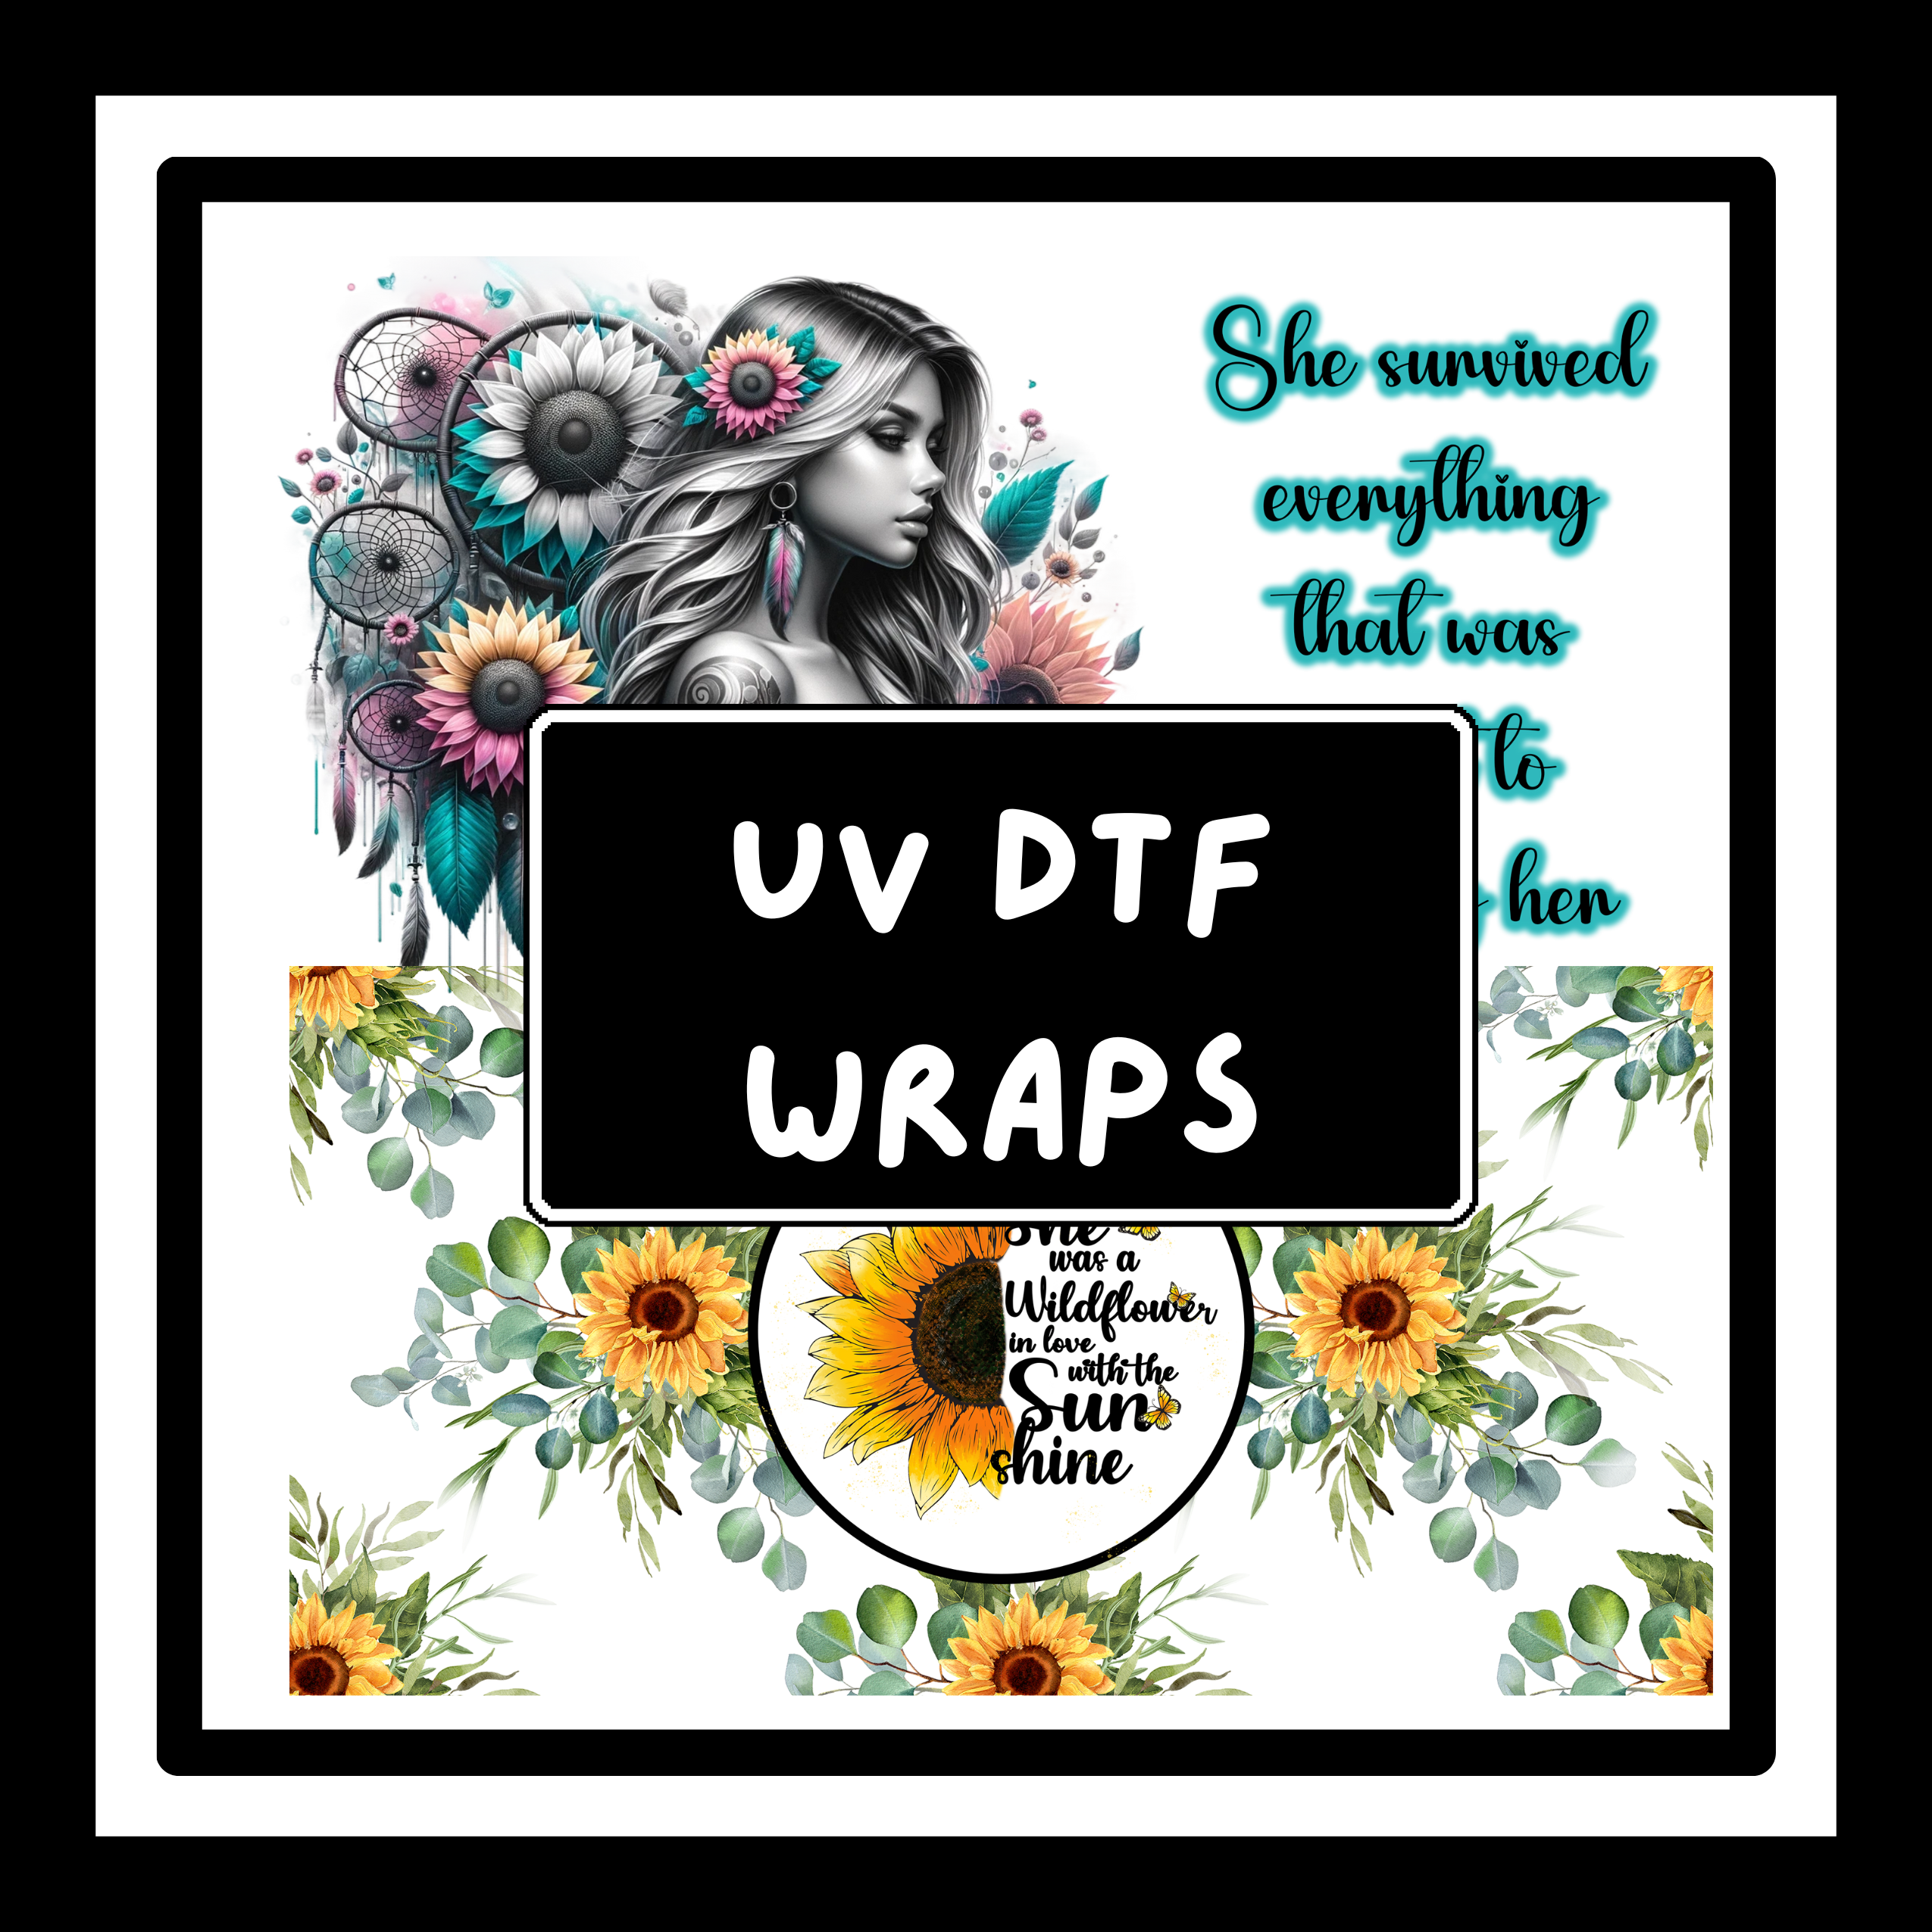 UV DTF Wraps, 24oz, Starbucks Wrap, Character Wrap, Inspirational Wrap